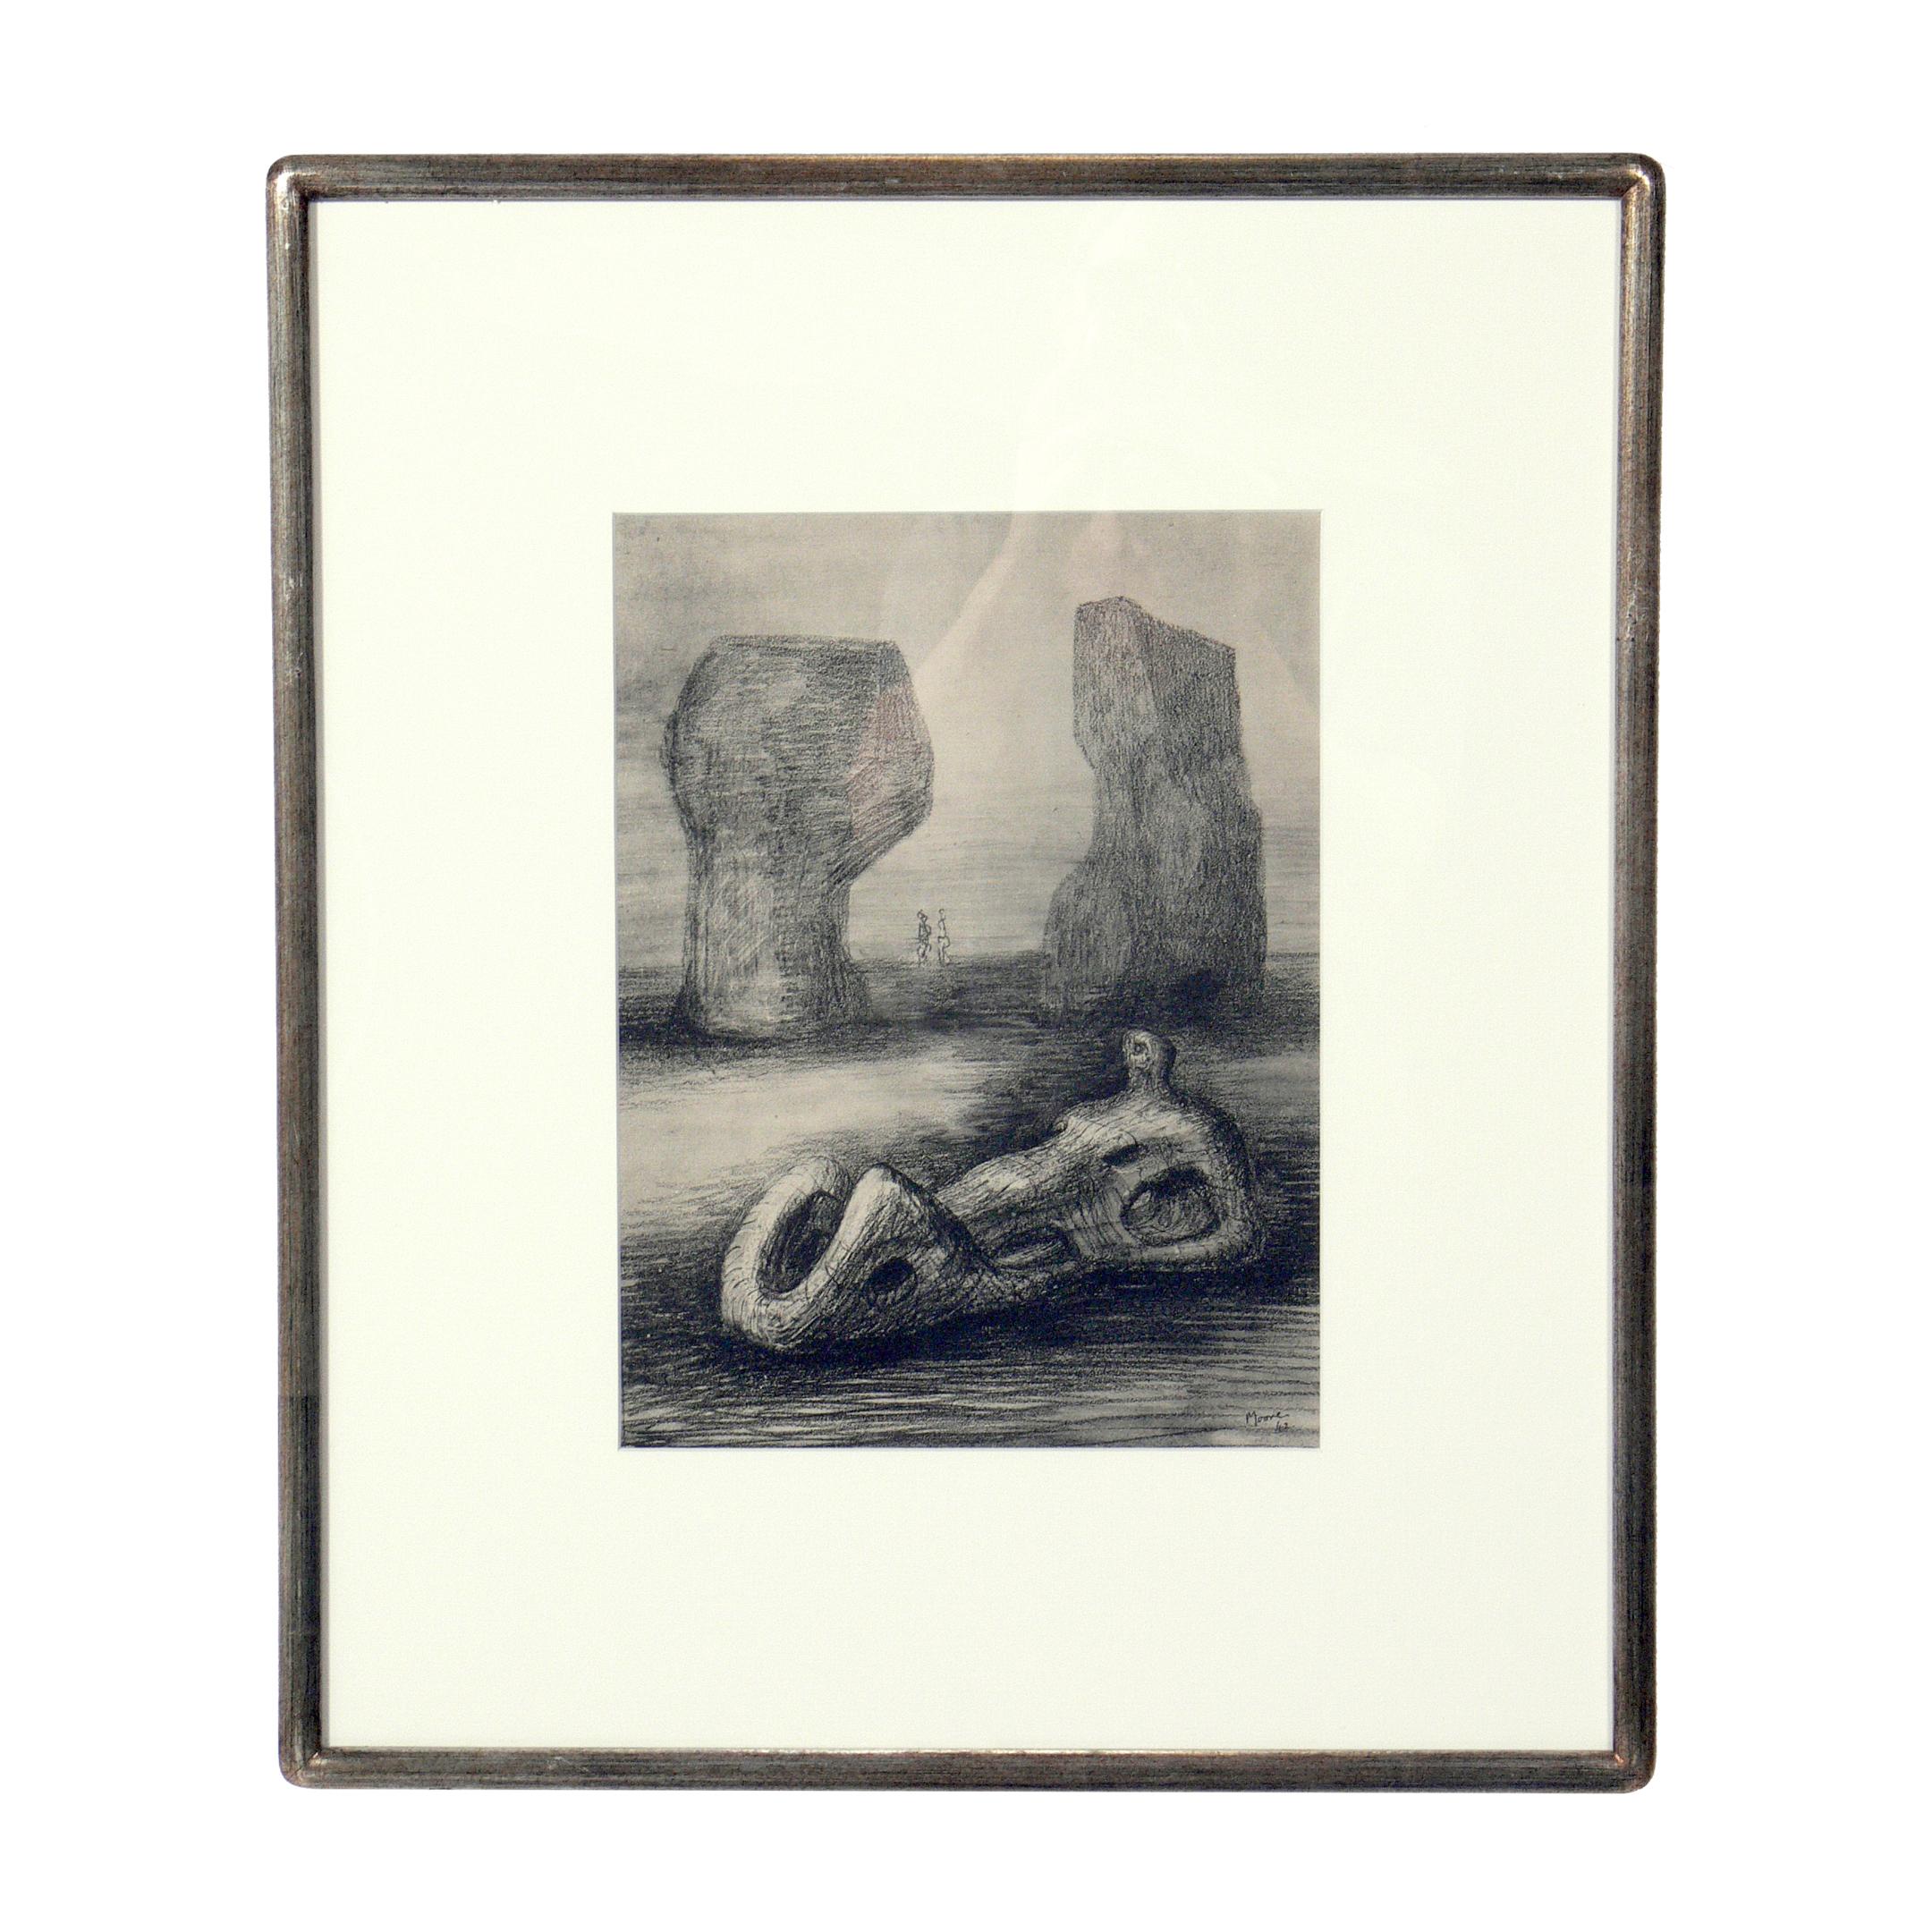 Drucke von Henry Moore, aus der limitierten Auflage des Folianten 